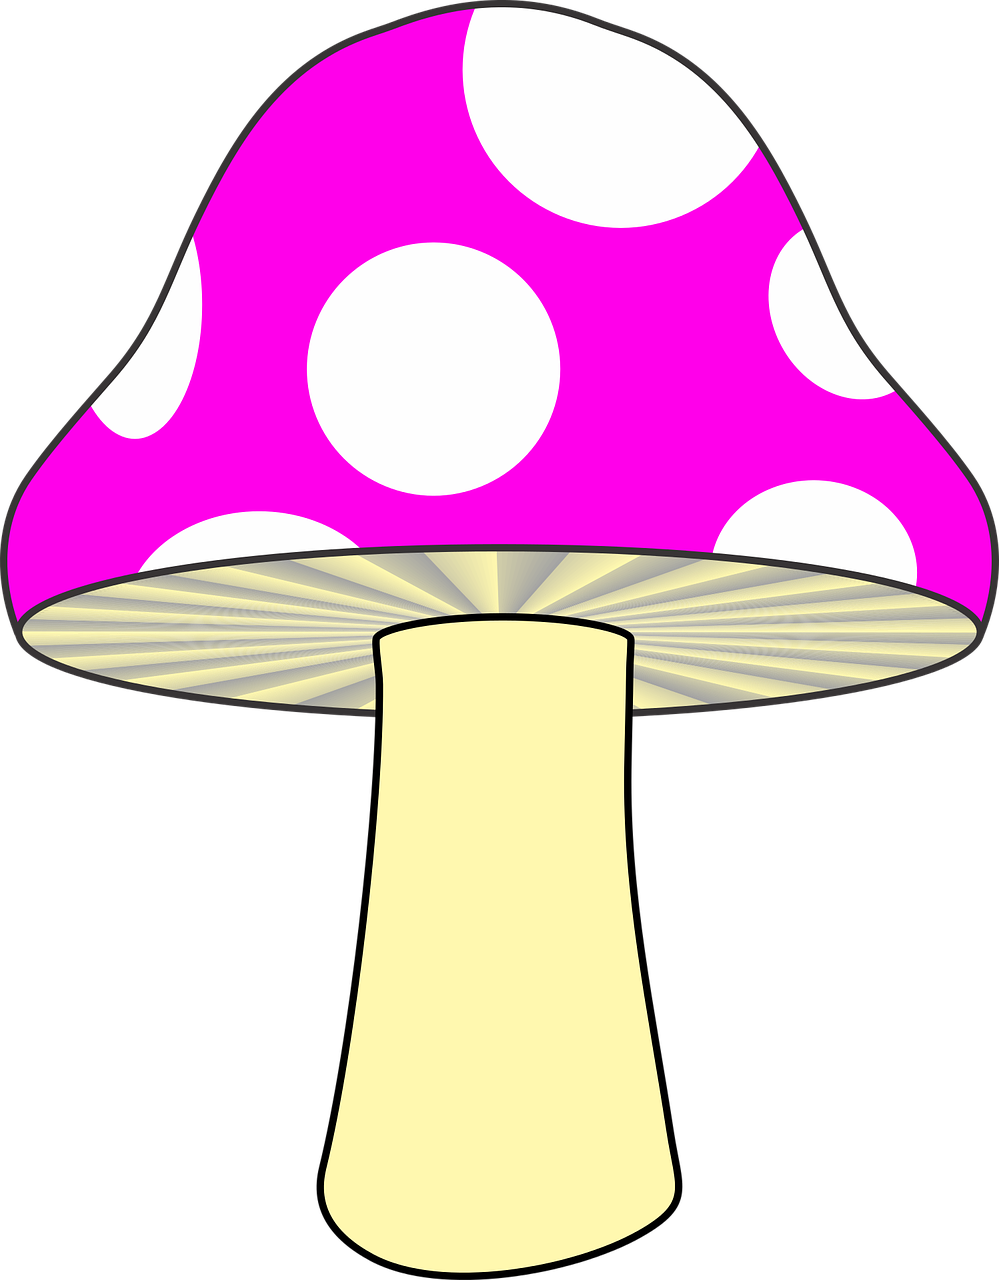 mushroom nature mushroom pink free photo